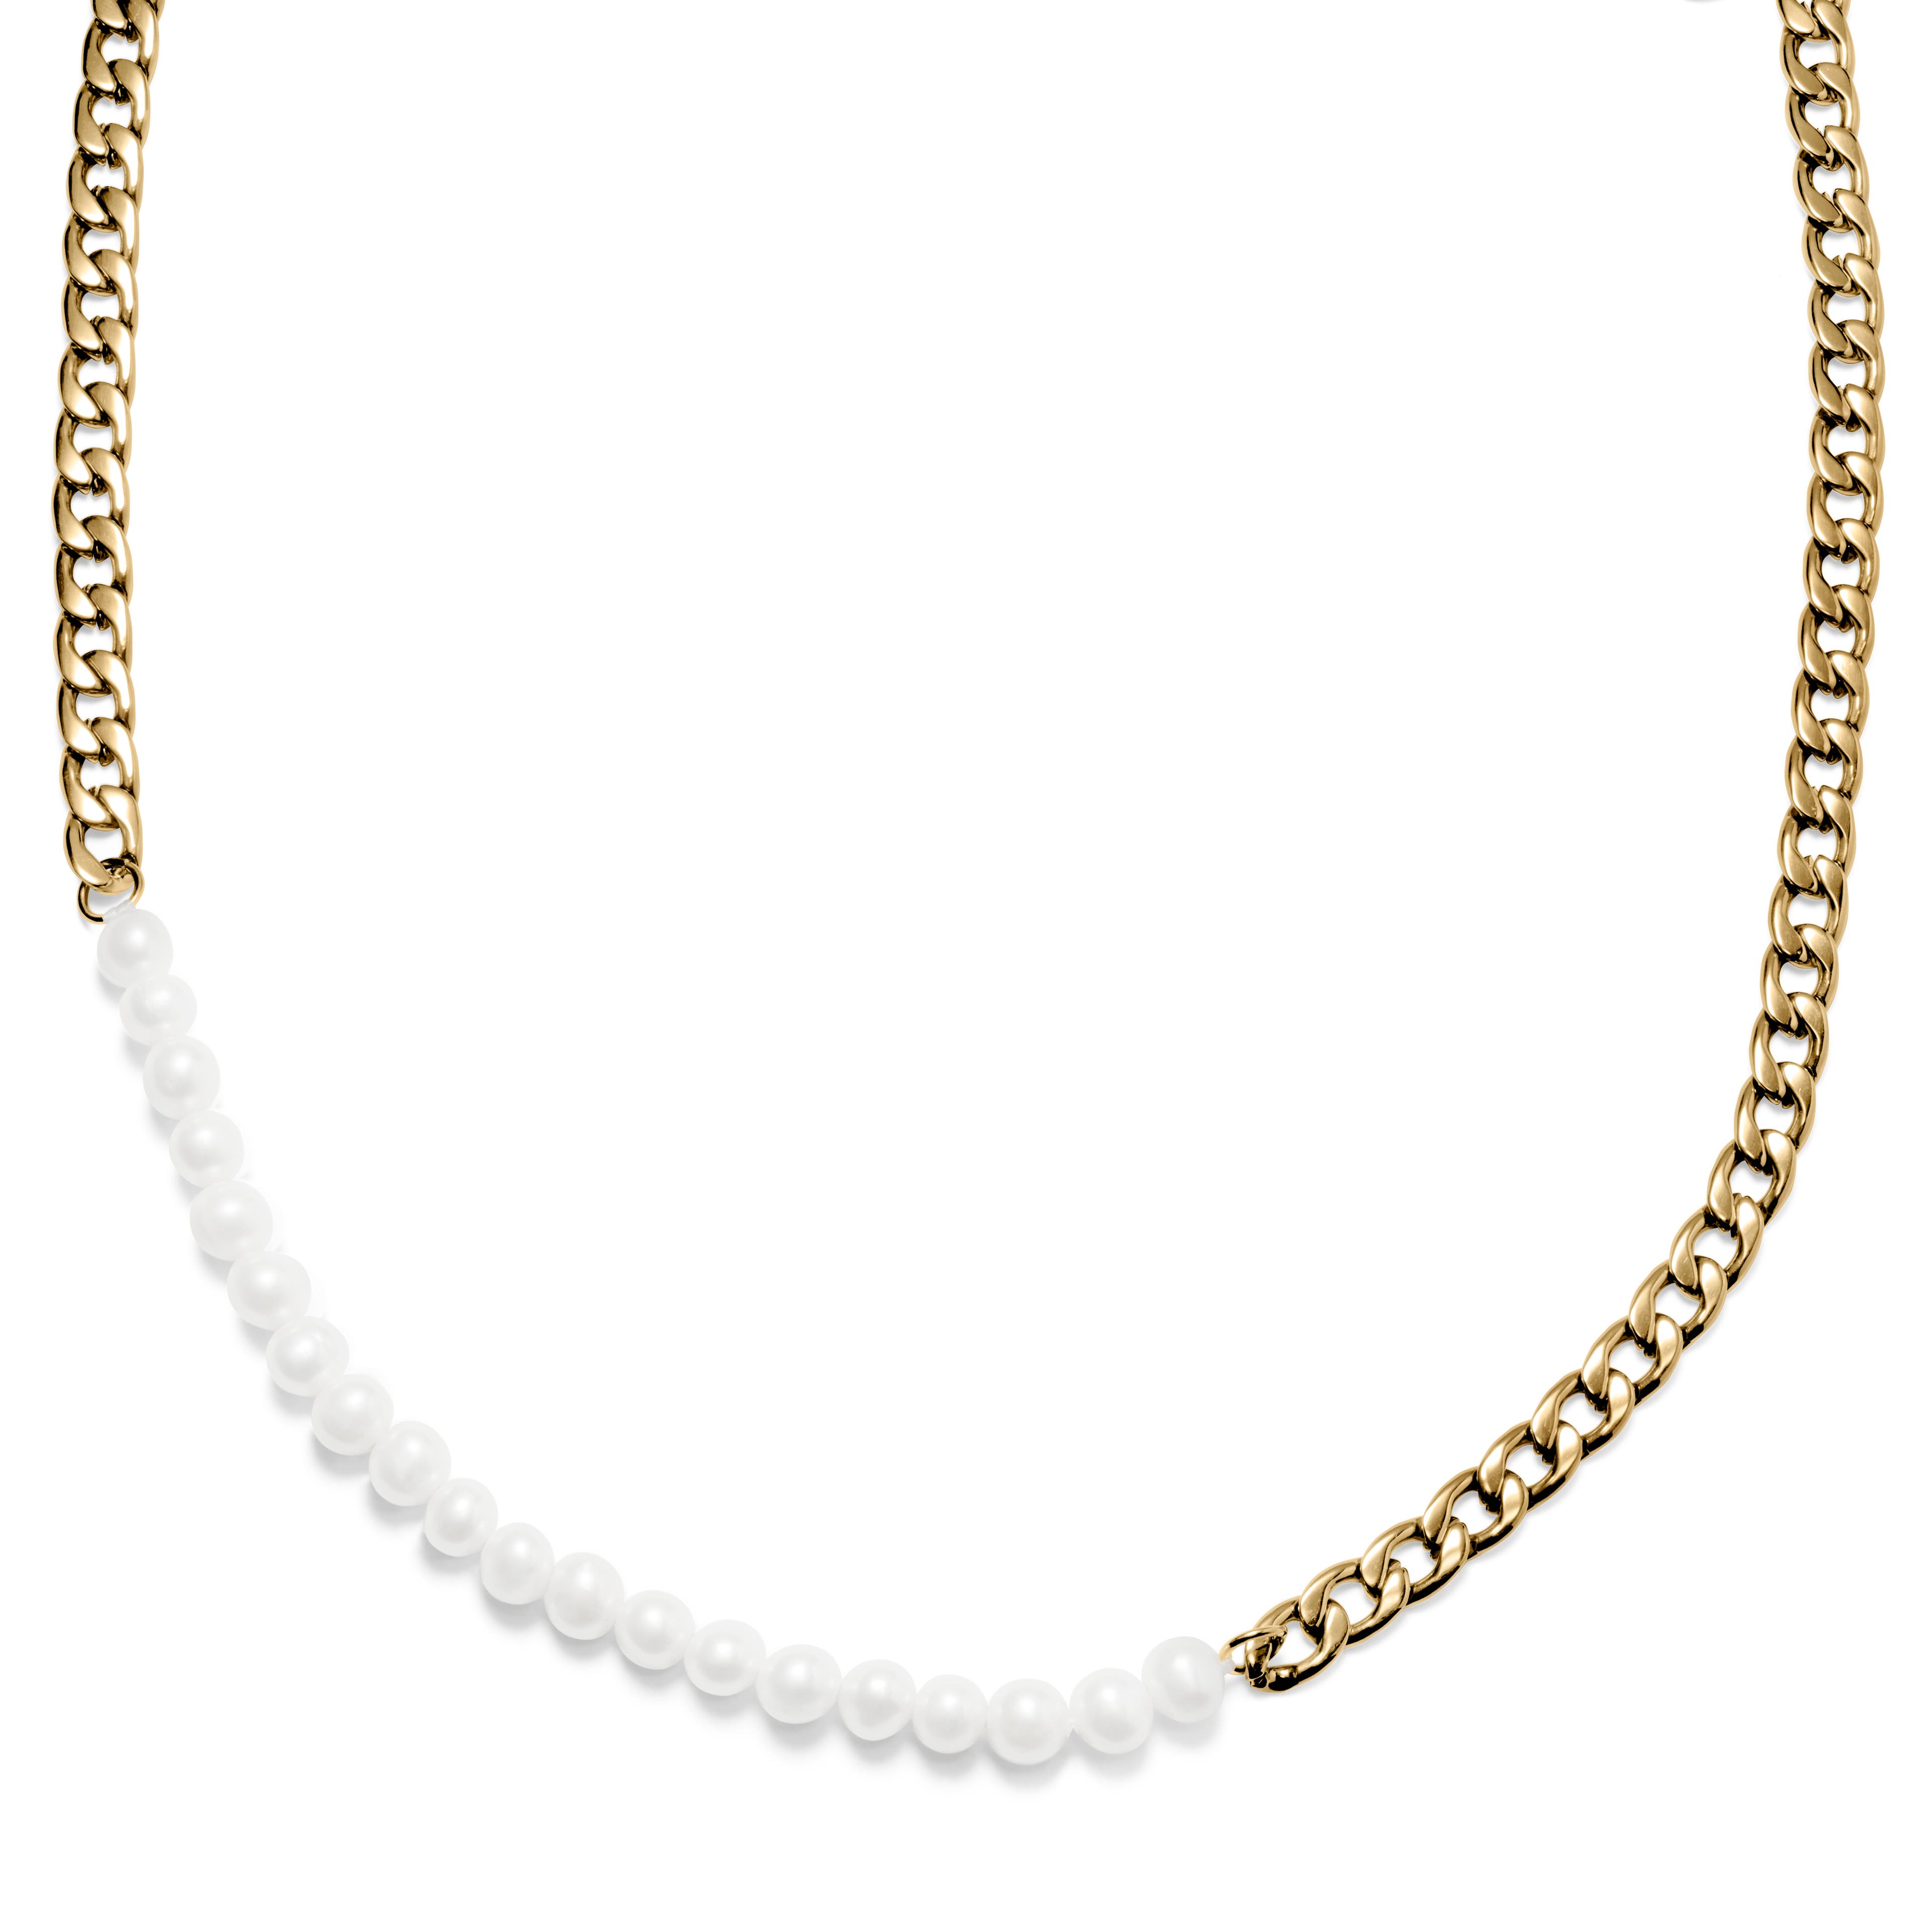 Charlie Amager článkový náhrdelník zlaté barvy s perličkami